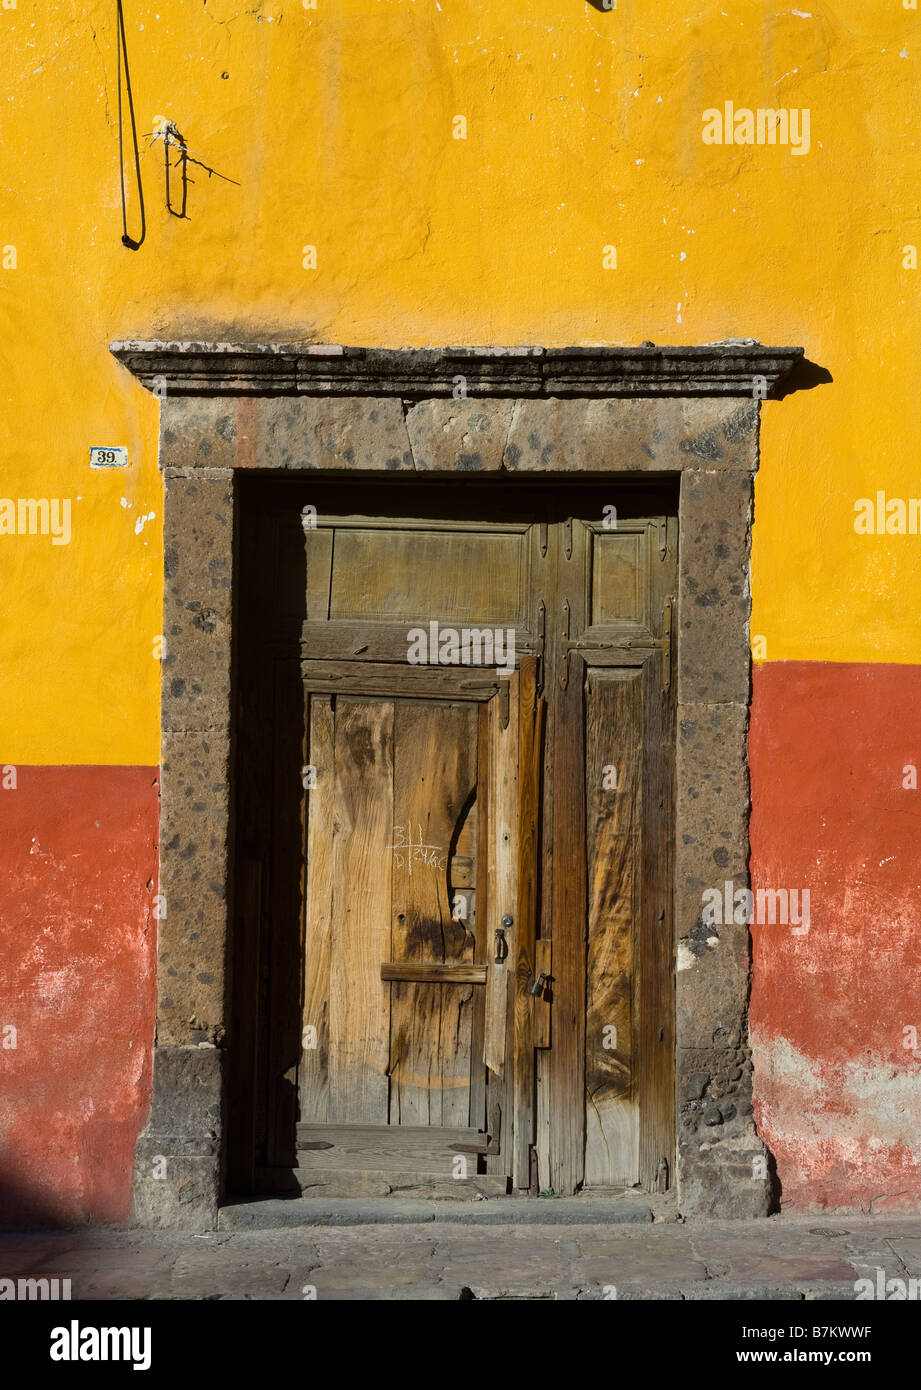 Doorway and Adobe Walls, San Miguel de Allende, Mexico Stock Photo